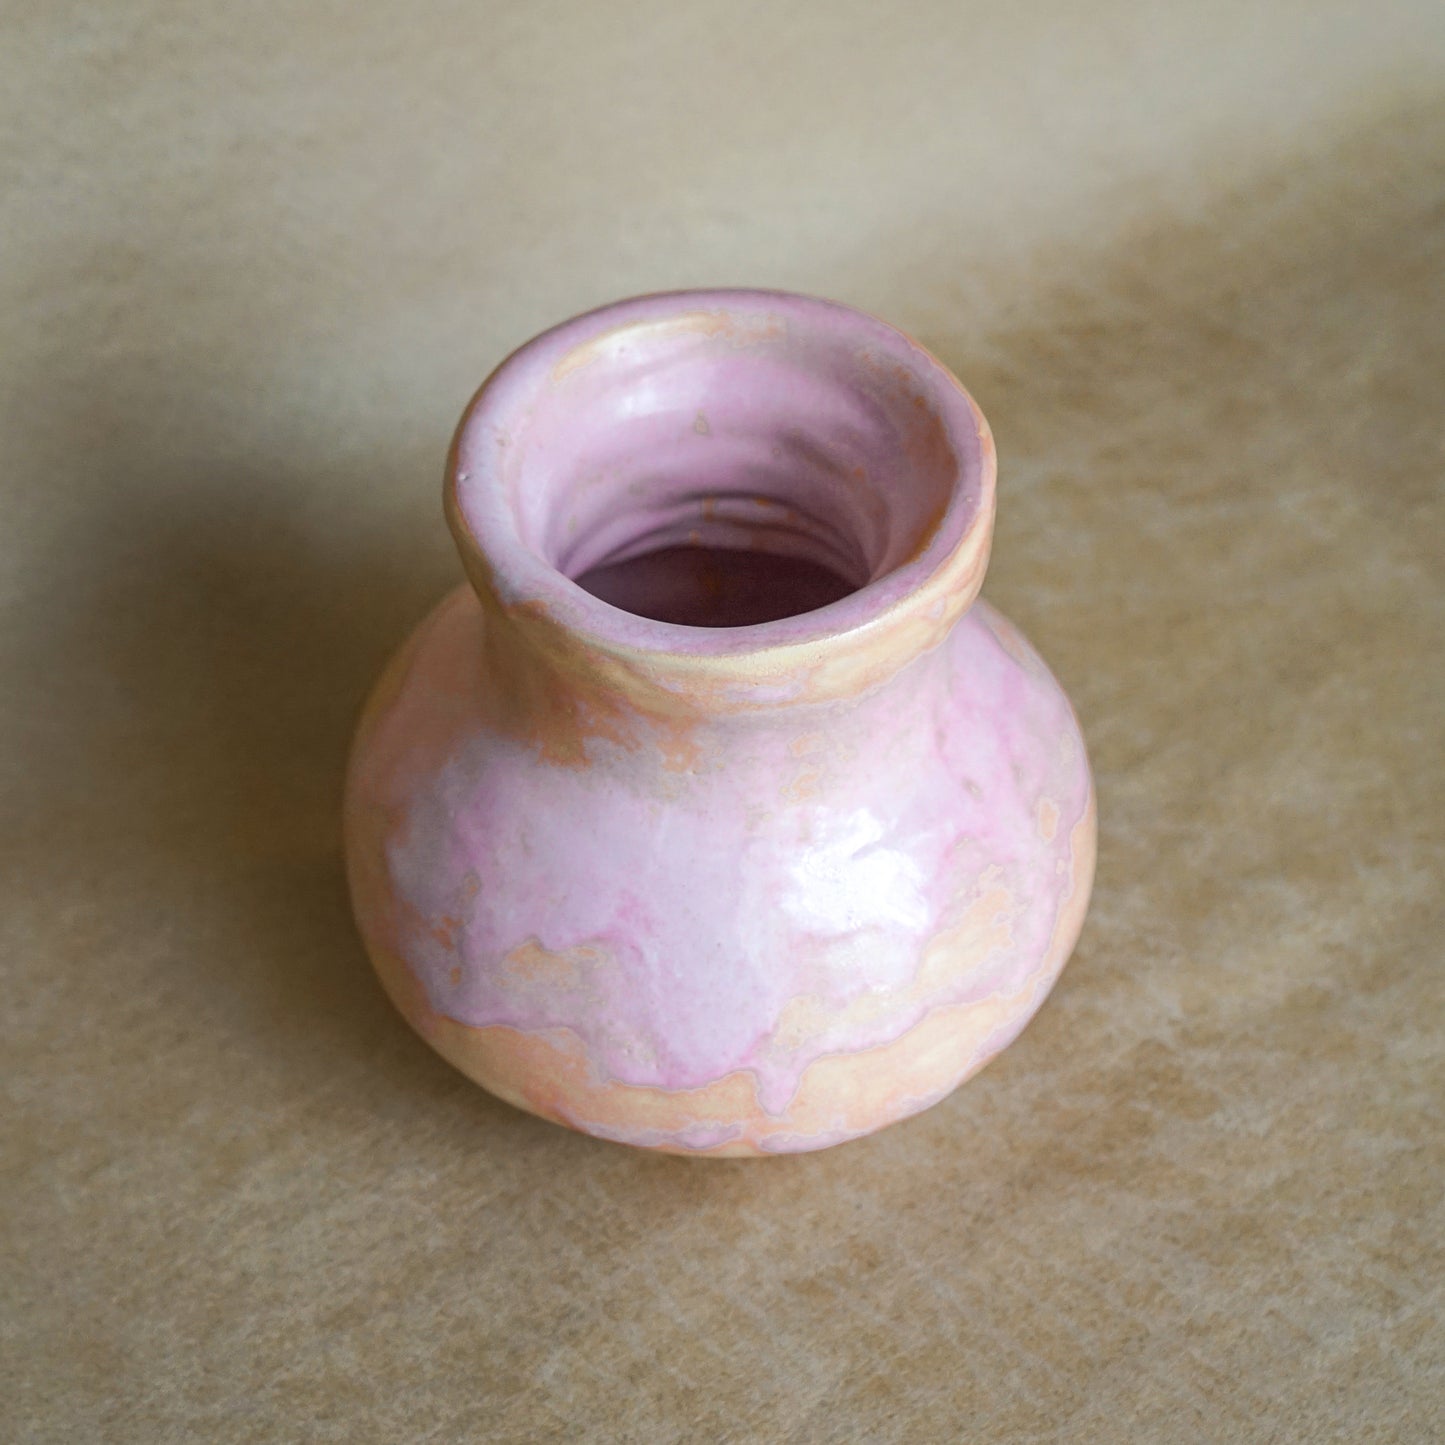 The Bubble Gum Vase